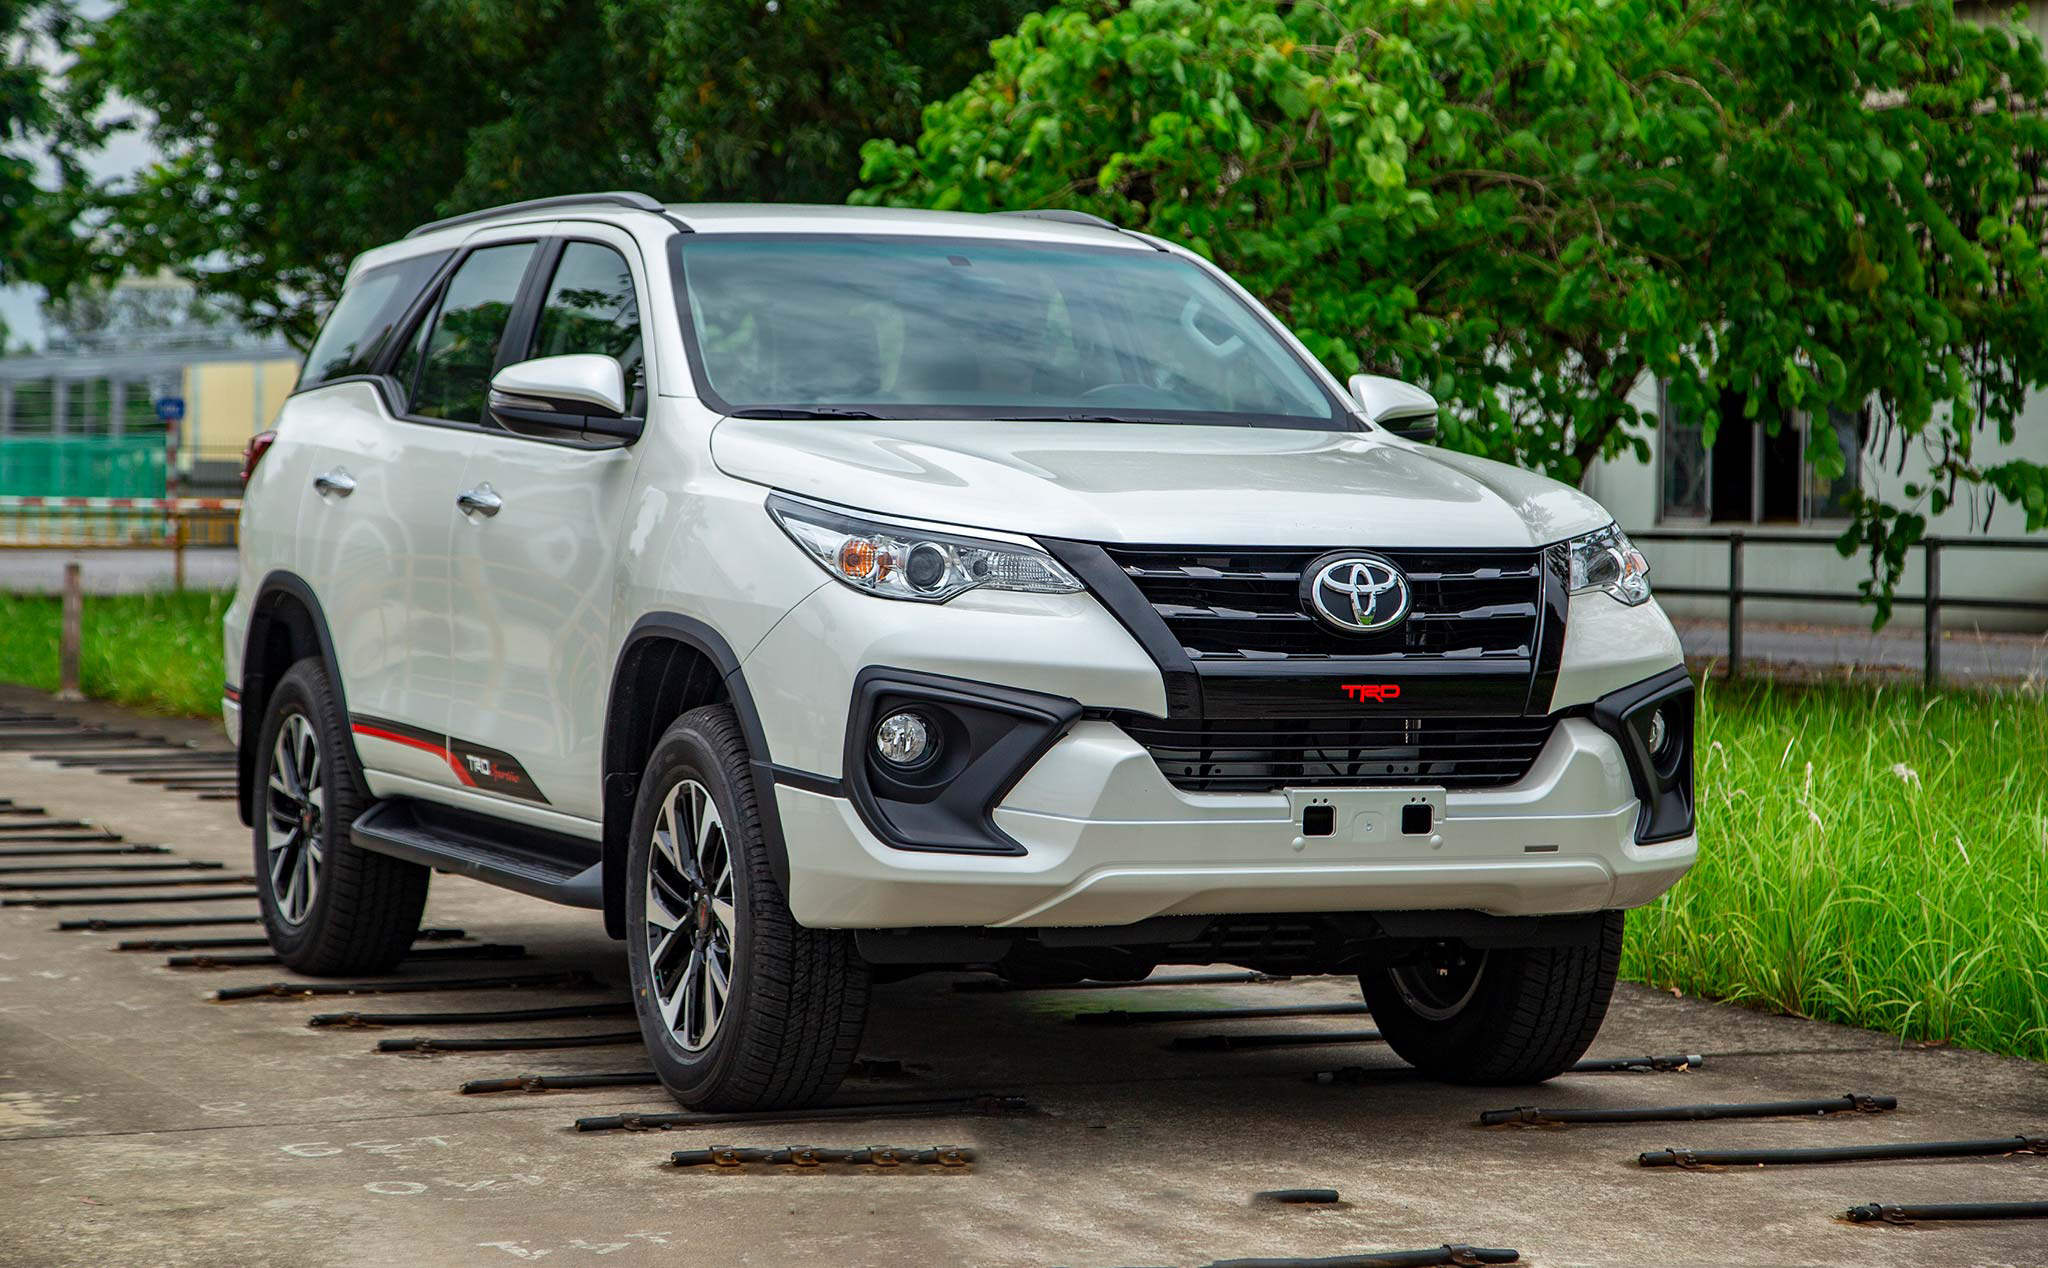 Toyota Việt Nam đang triệu hồi xe để khắc phục lỗi về bơm xăng, hệ truyền động và hệ thống phanh